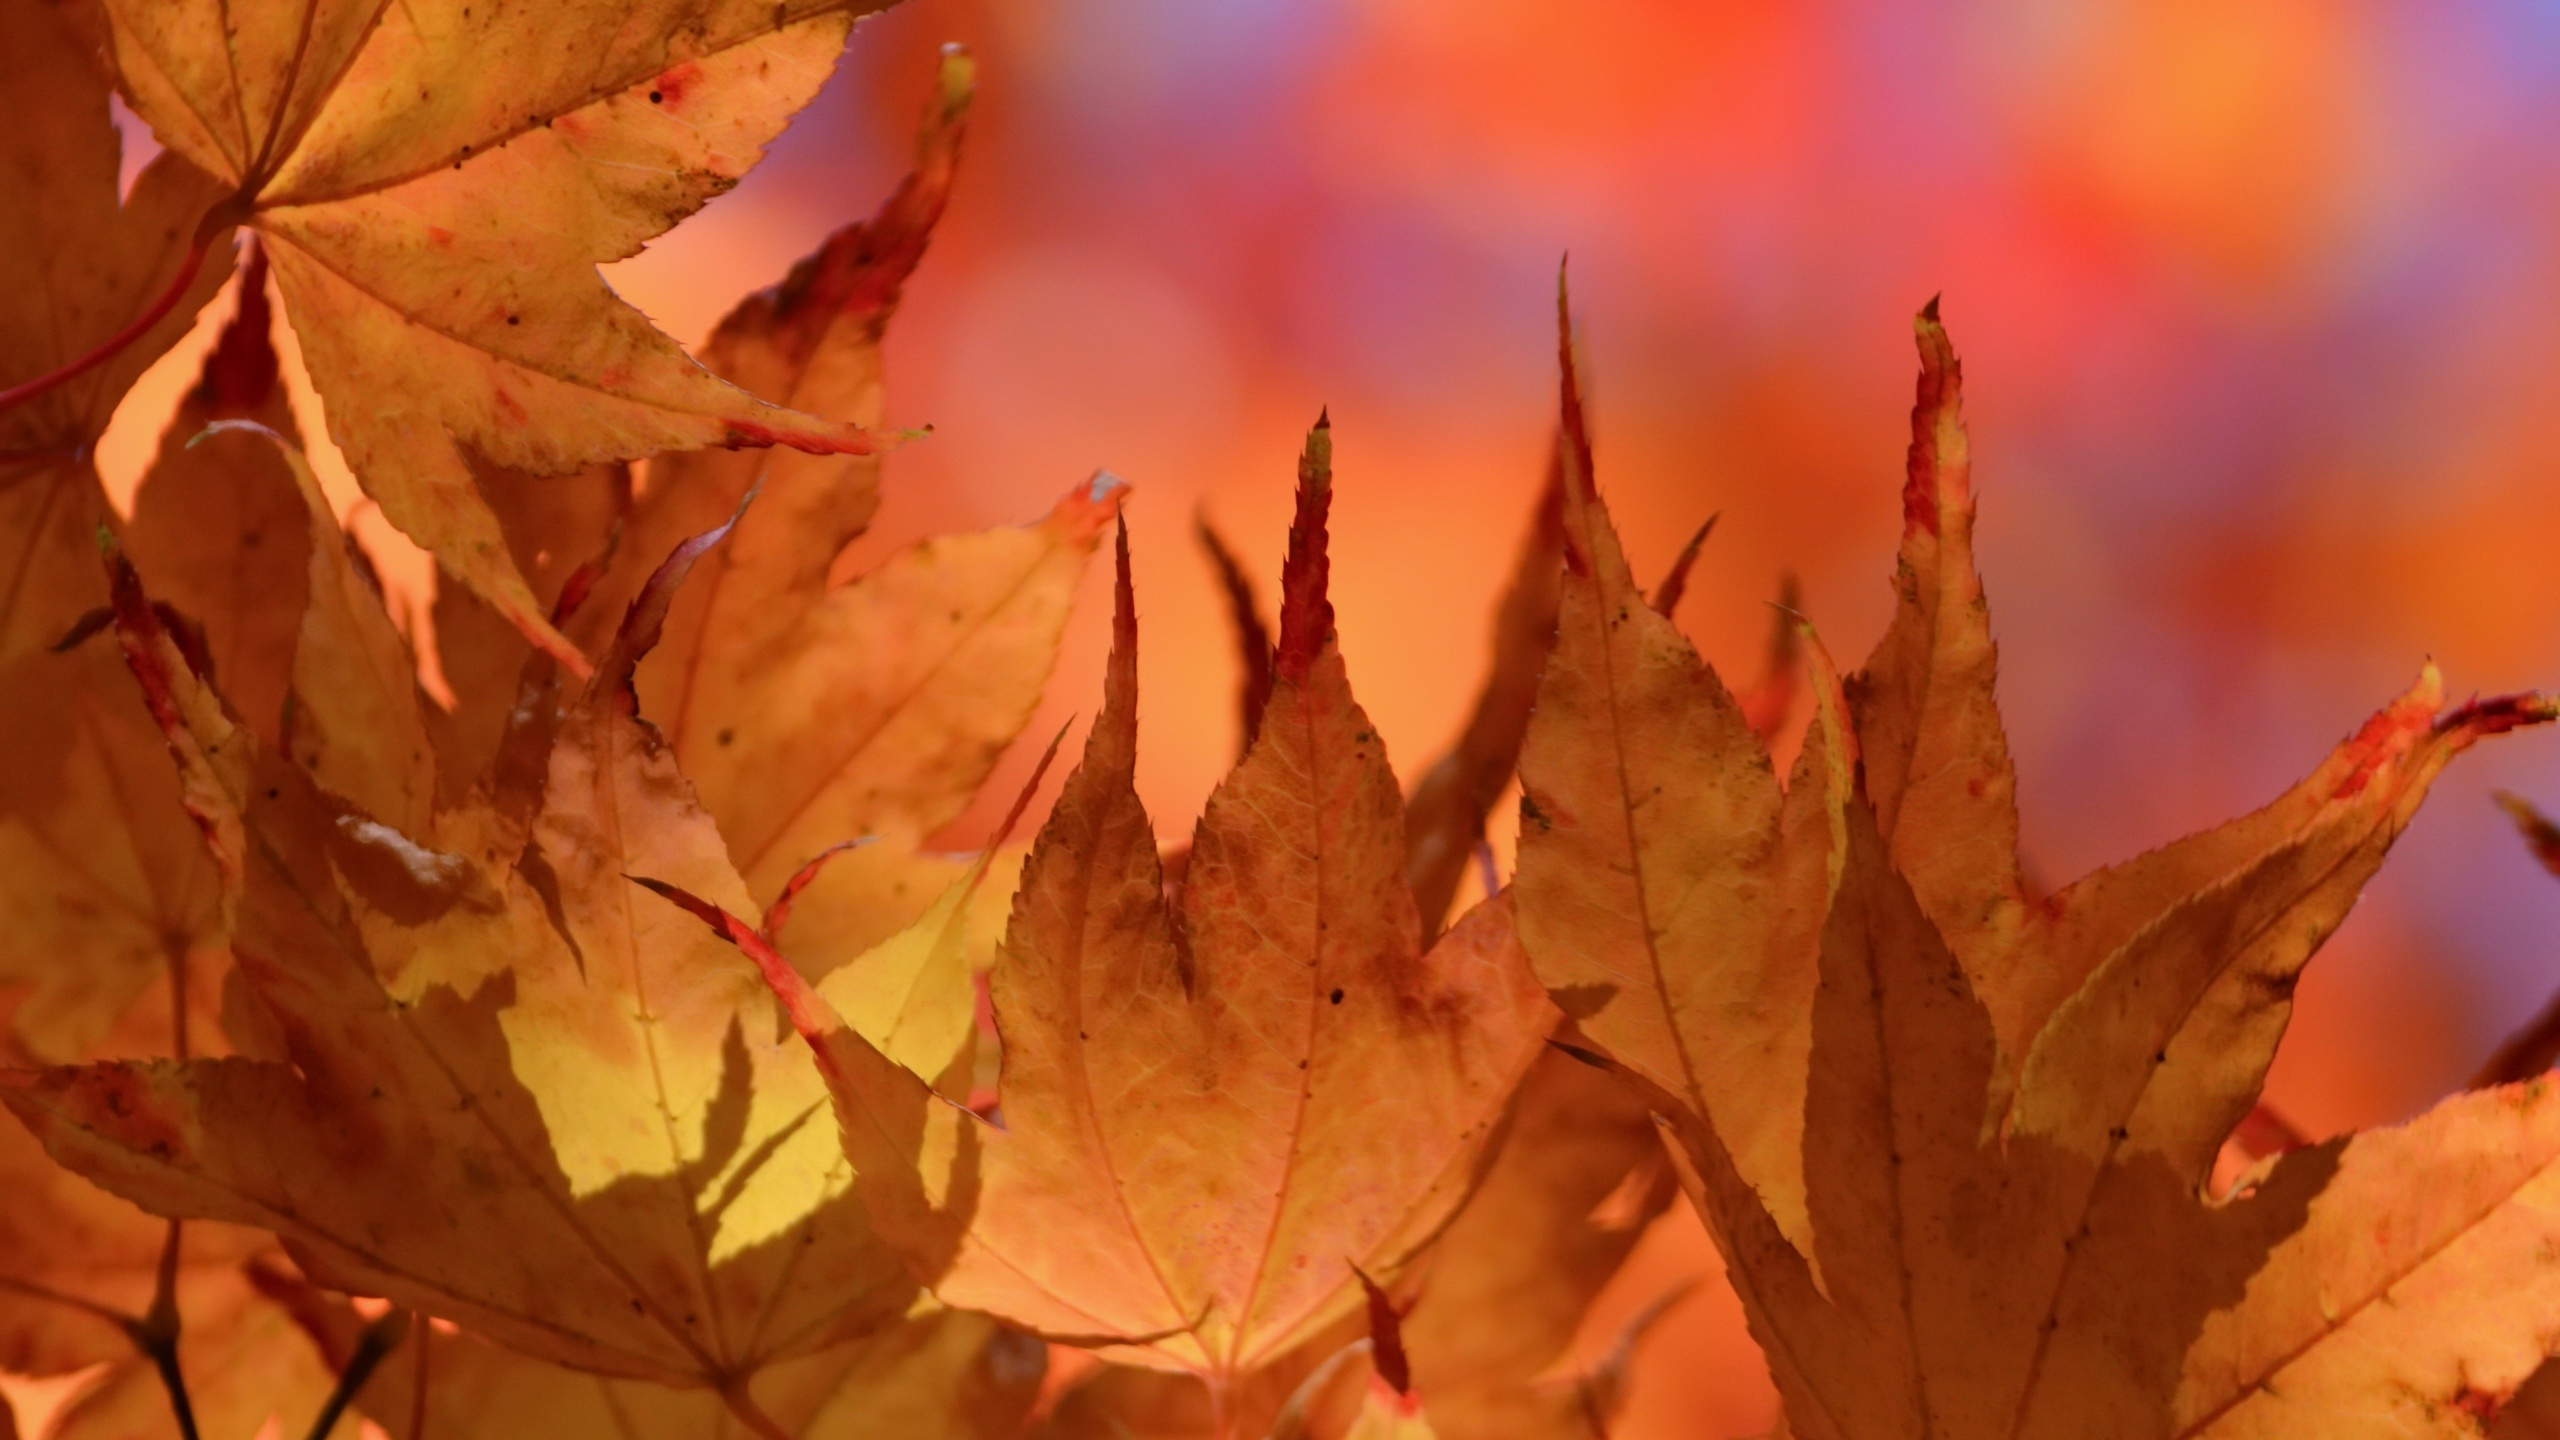 Brown Leaves in Tilt Shift Lens. Wallpaper in 2560x1440 Resolution